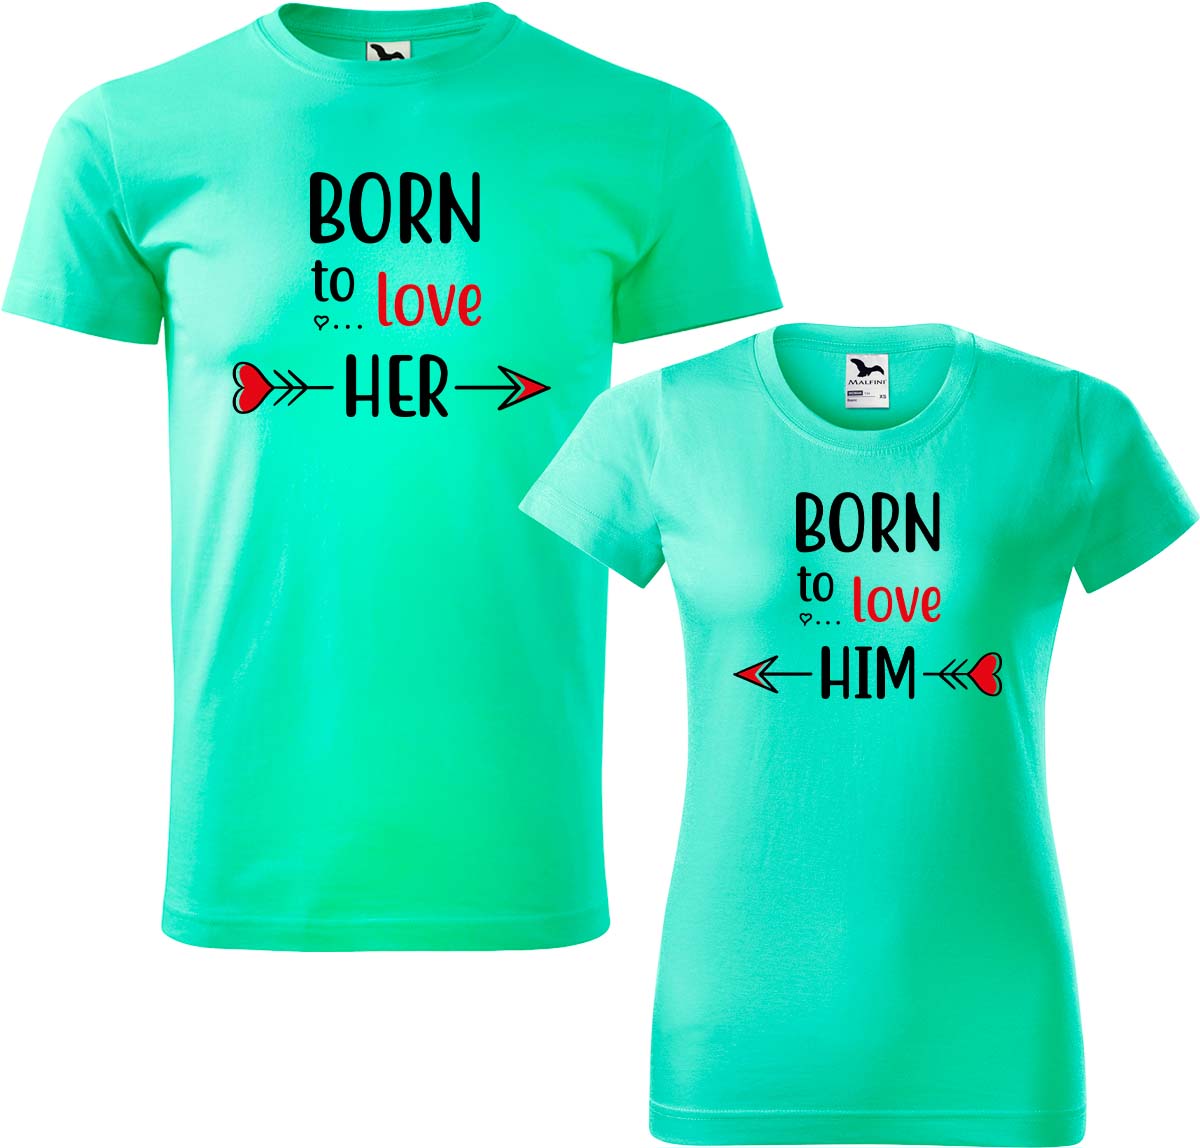 Trička pro páry - Born to Love Barva: Mátová (95), Velikost dámské tričko: S, Velikost pánské tričko: 4XL